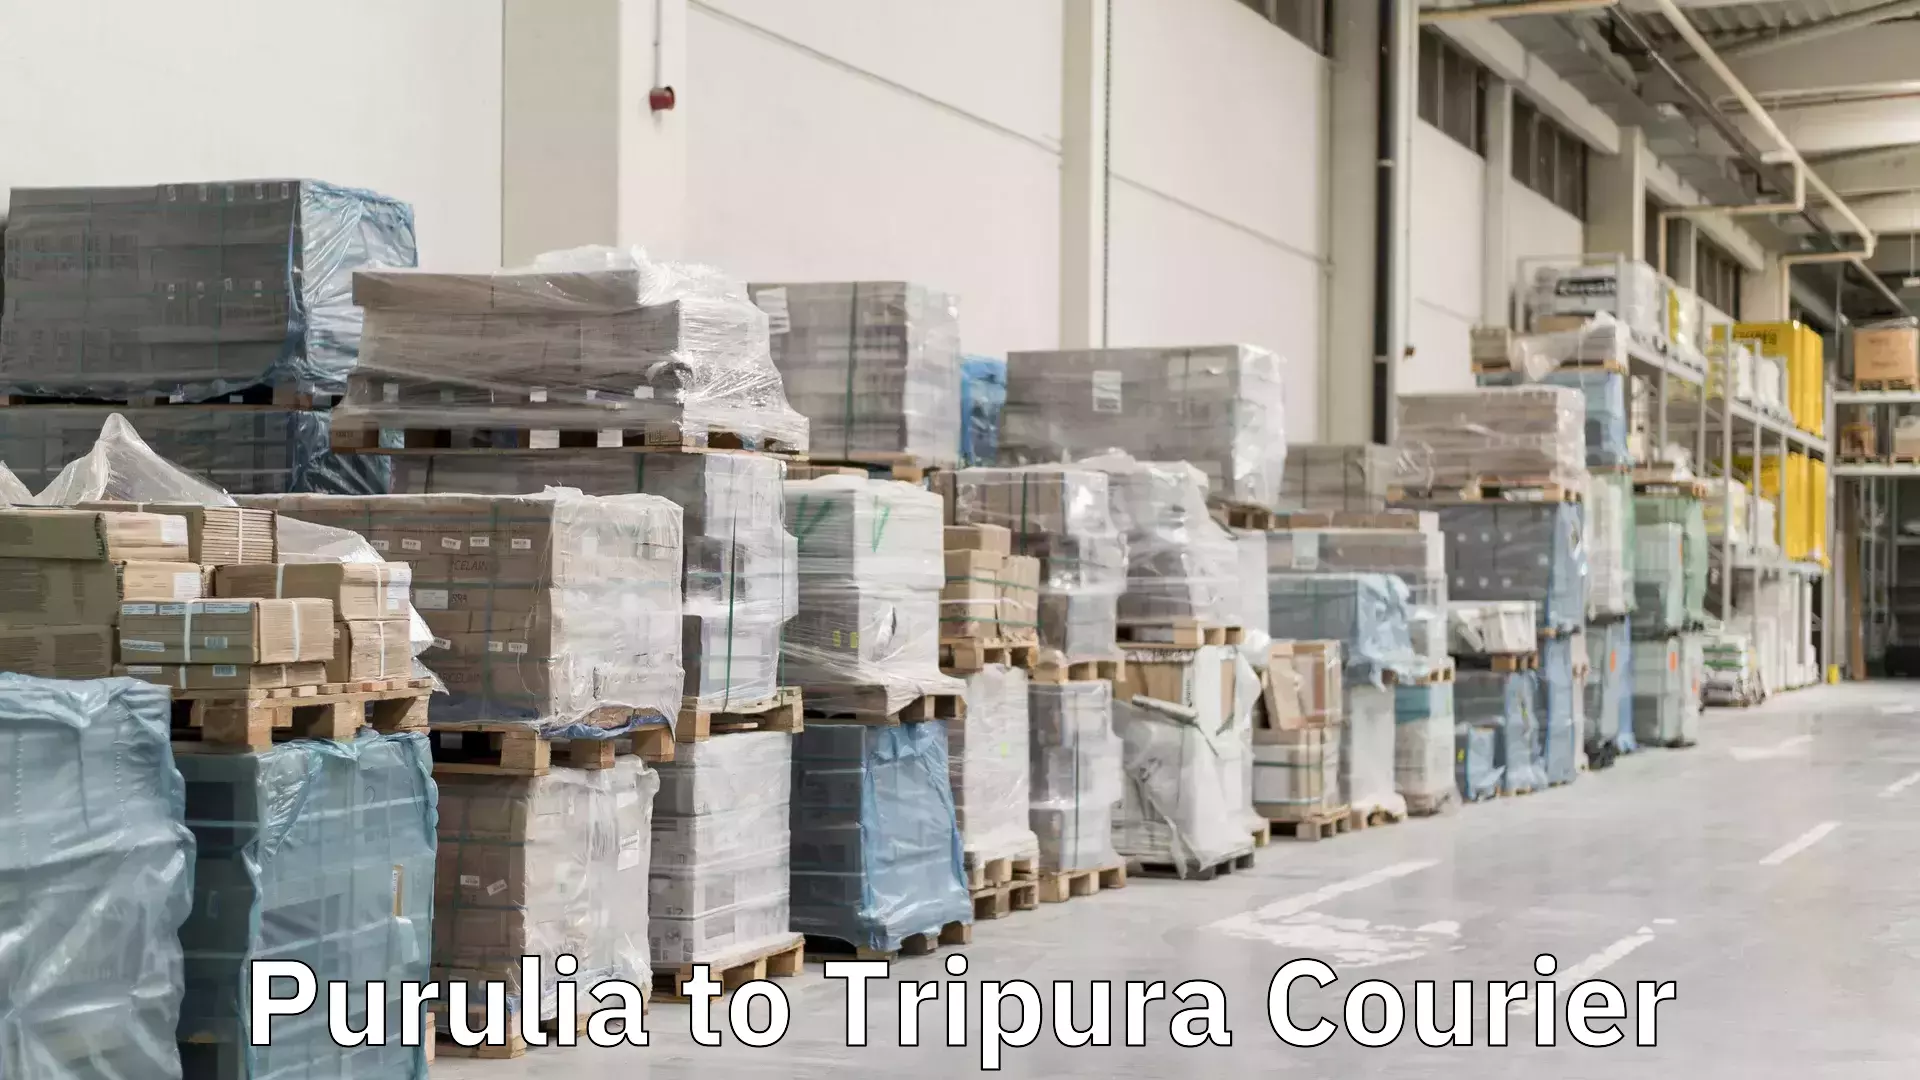 Local delivery service Purulia to Tripura